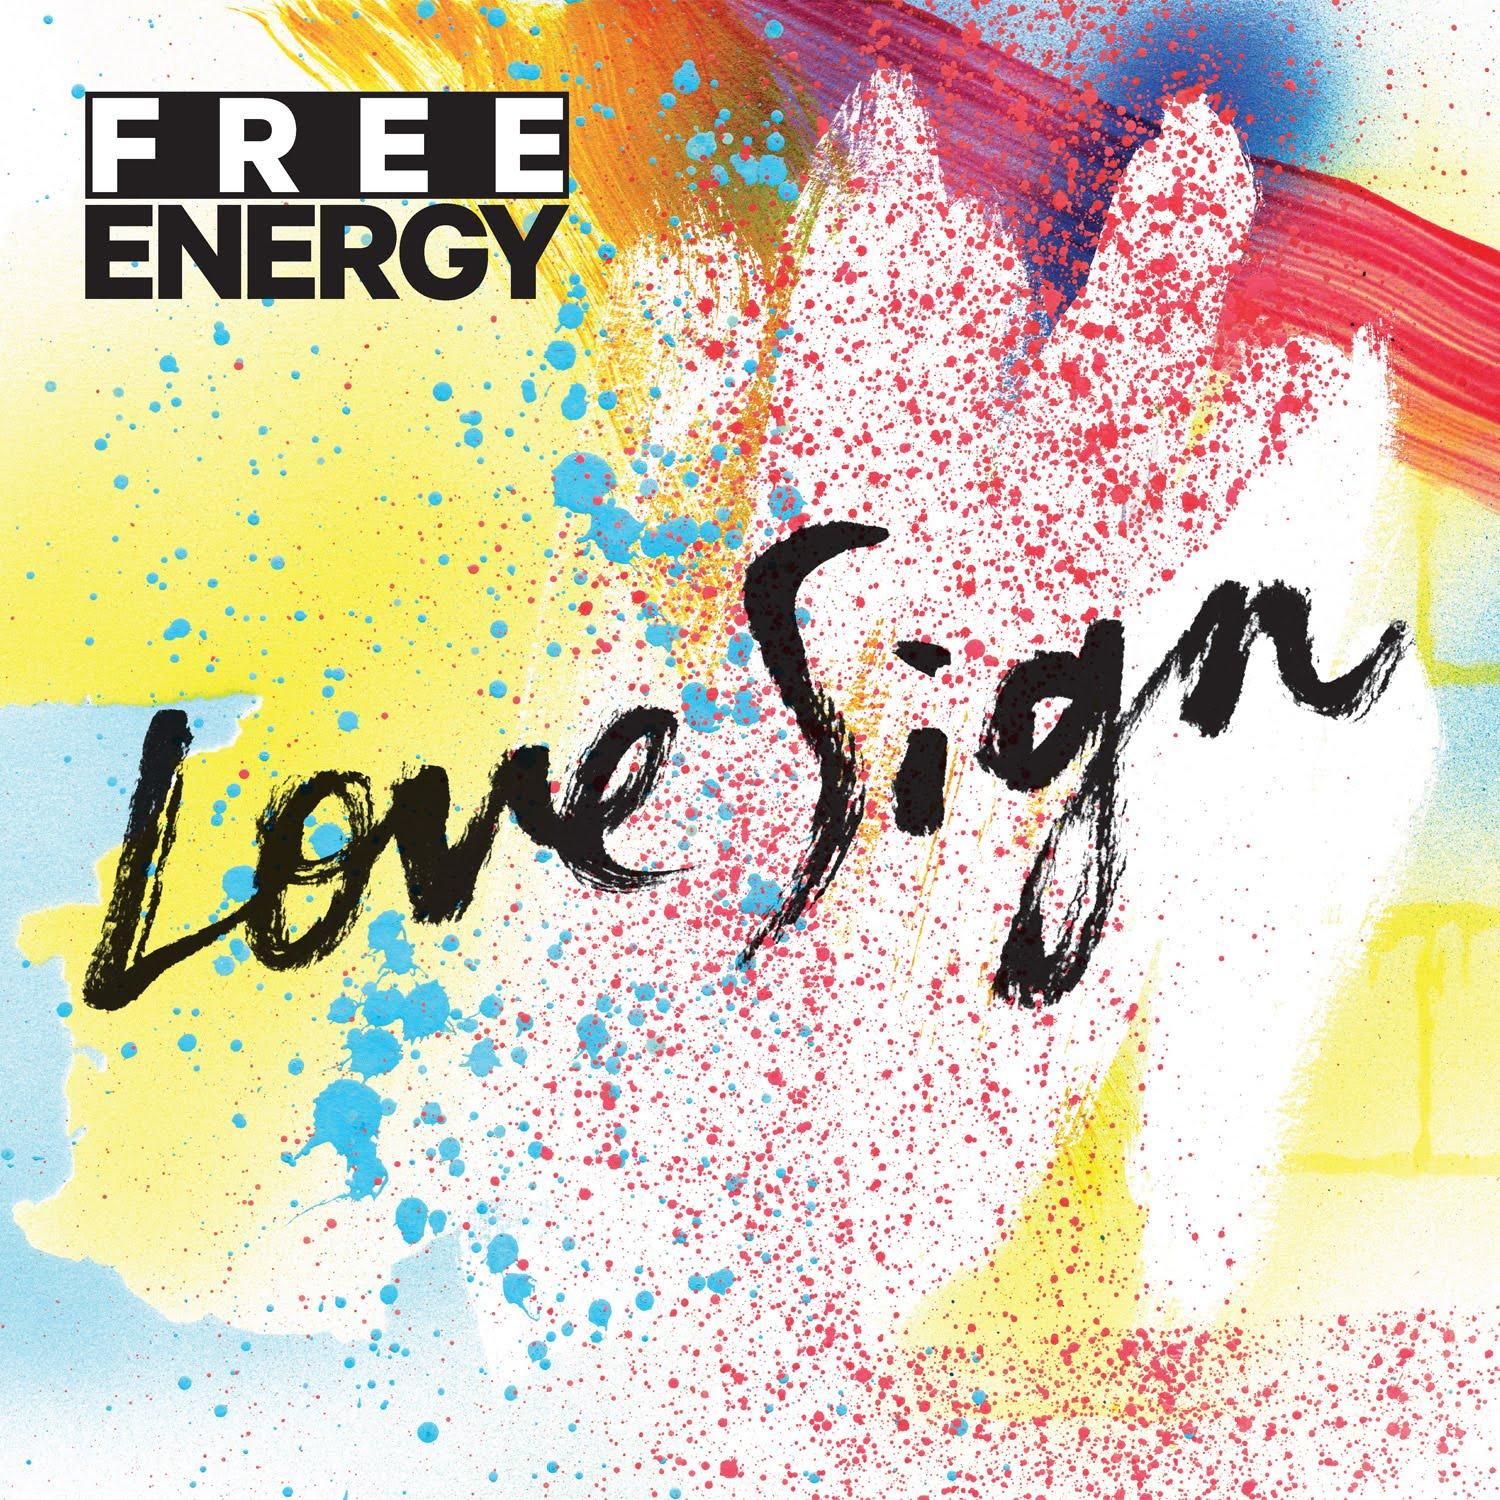 free energy love sign Free Energy   Love Sign